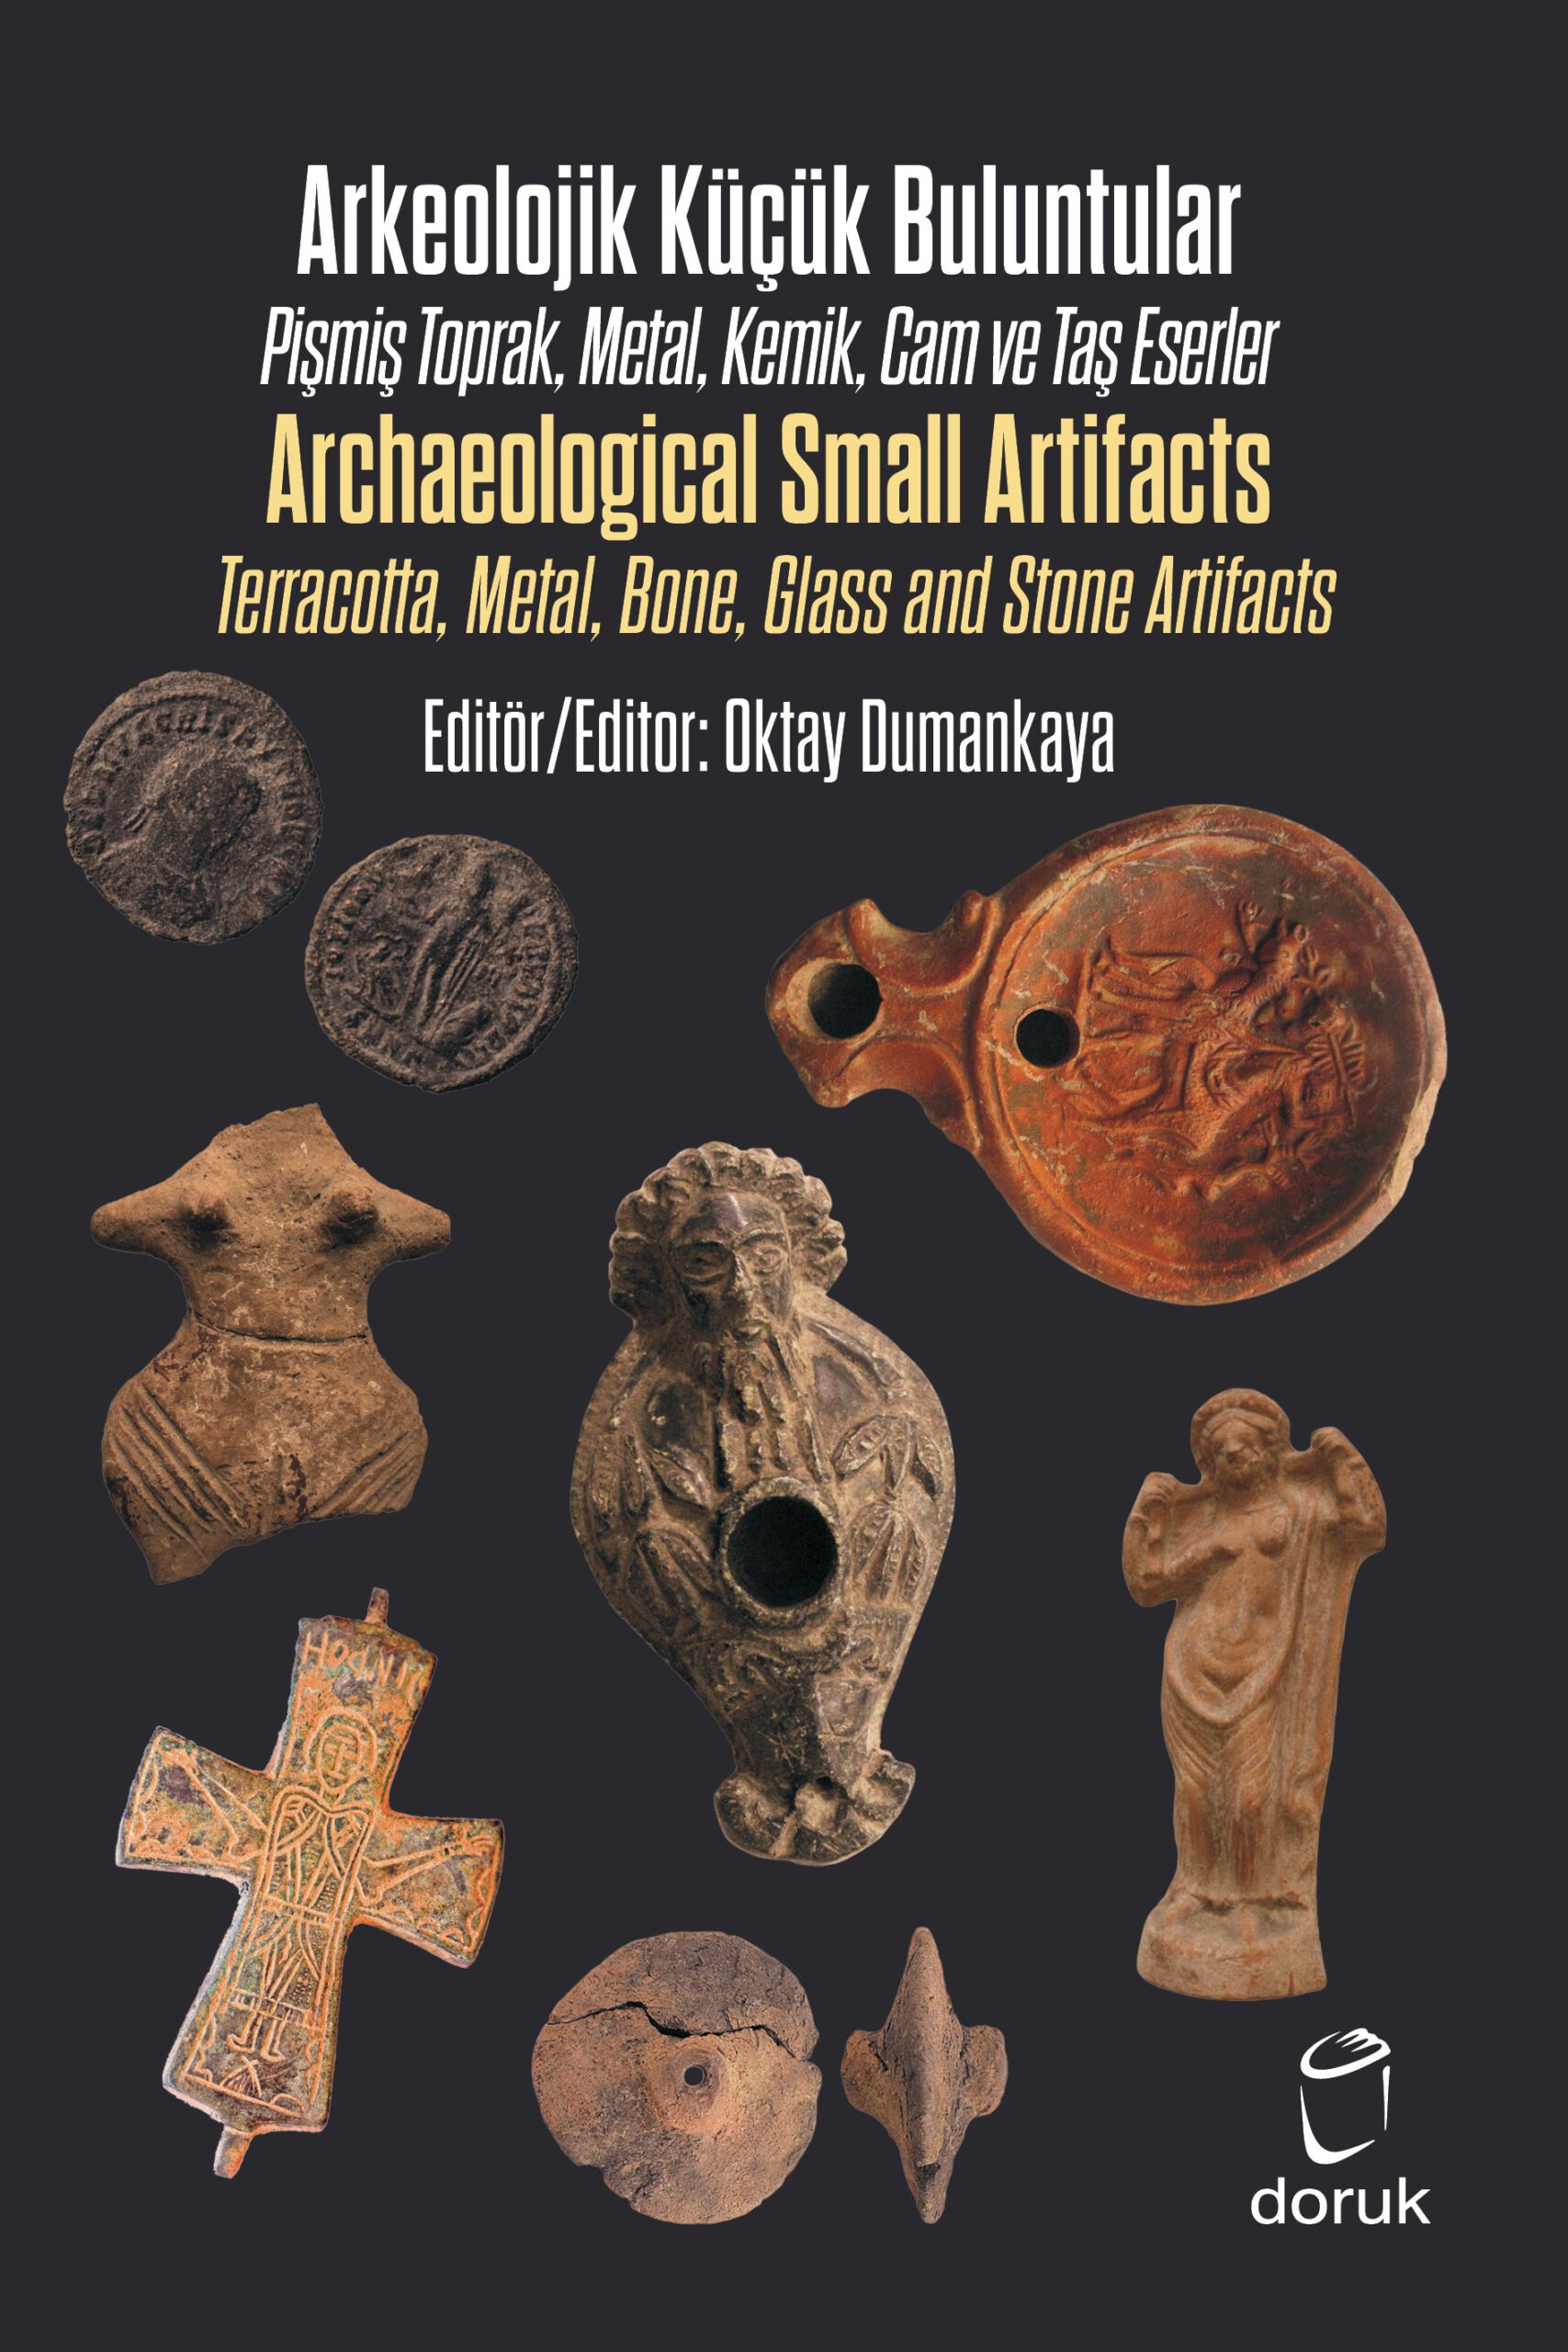 Arkeolojik Küçük Buluntular  –  Archaeological Small Artifacts